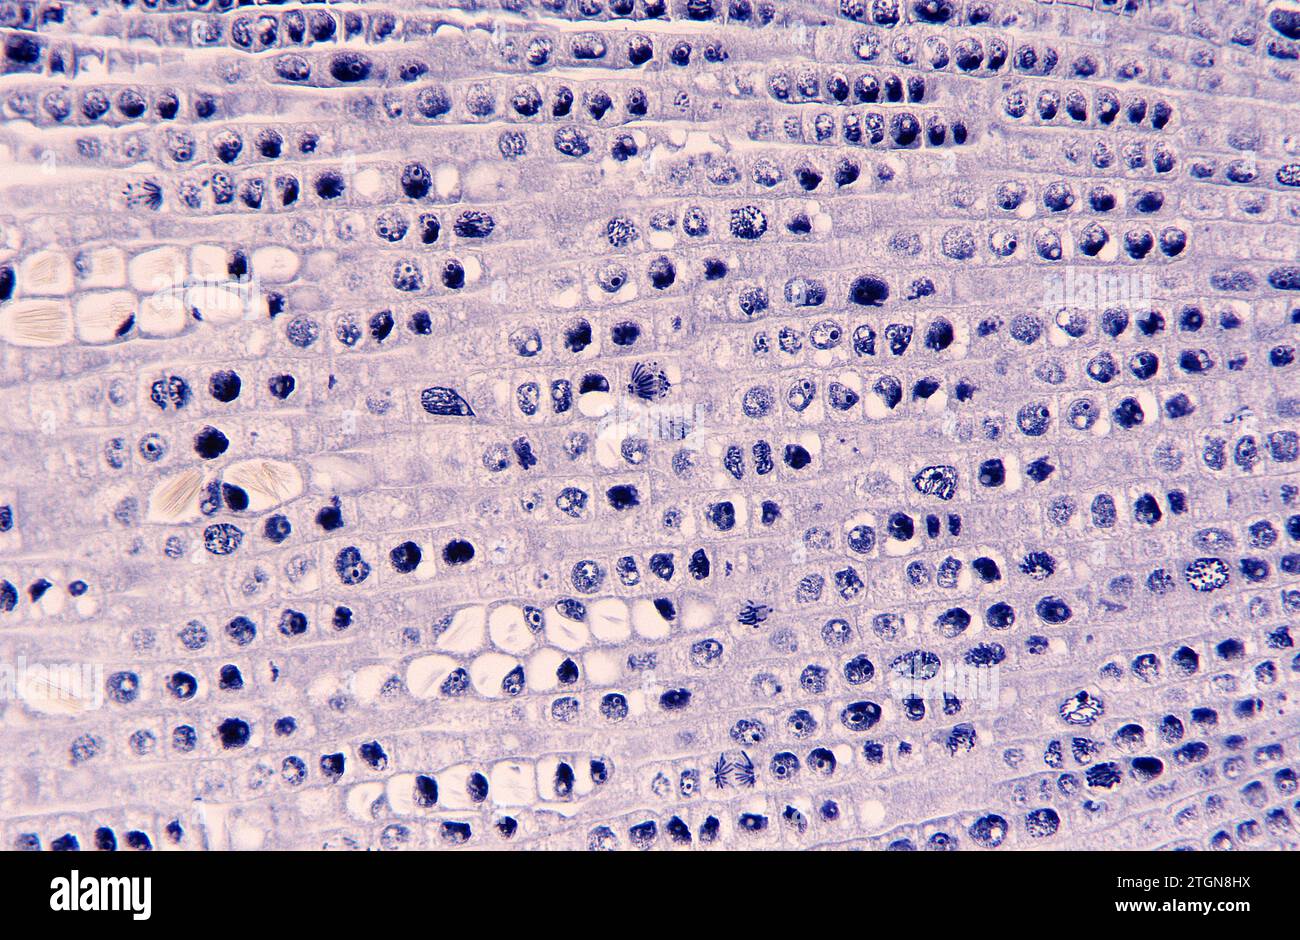 Apikaler Wurzelmeristem mit Zellteilung (Mitose) und Raphiden. Photomikrographische Zwiebelwurzel. Stockfoto